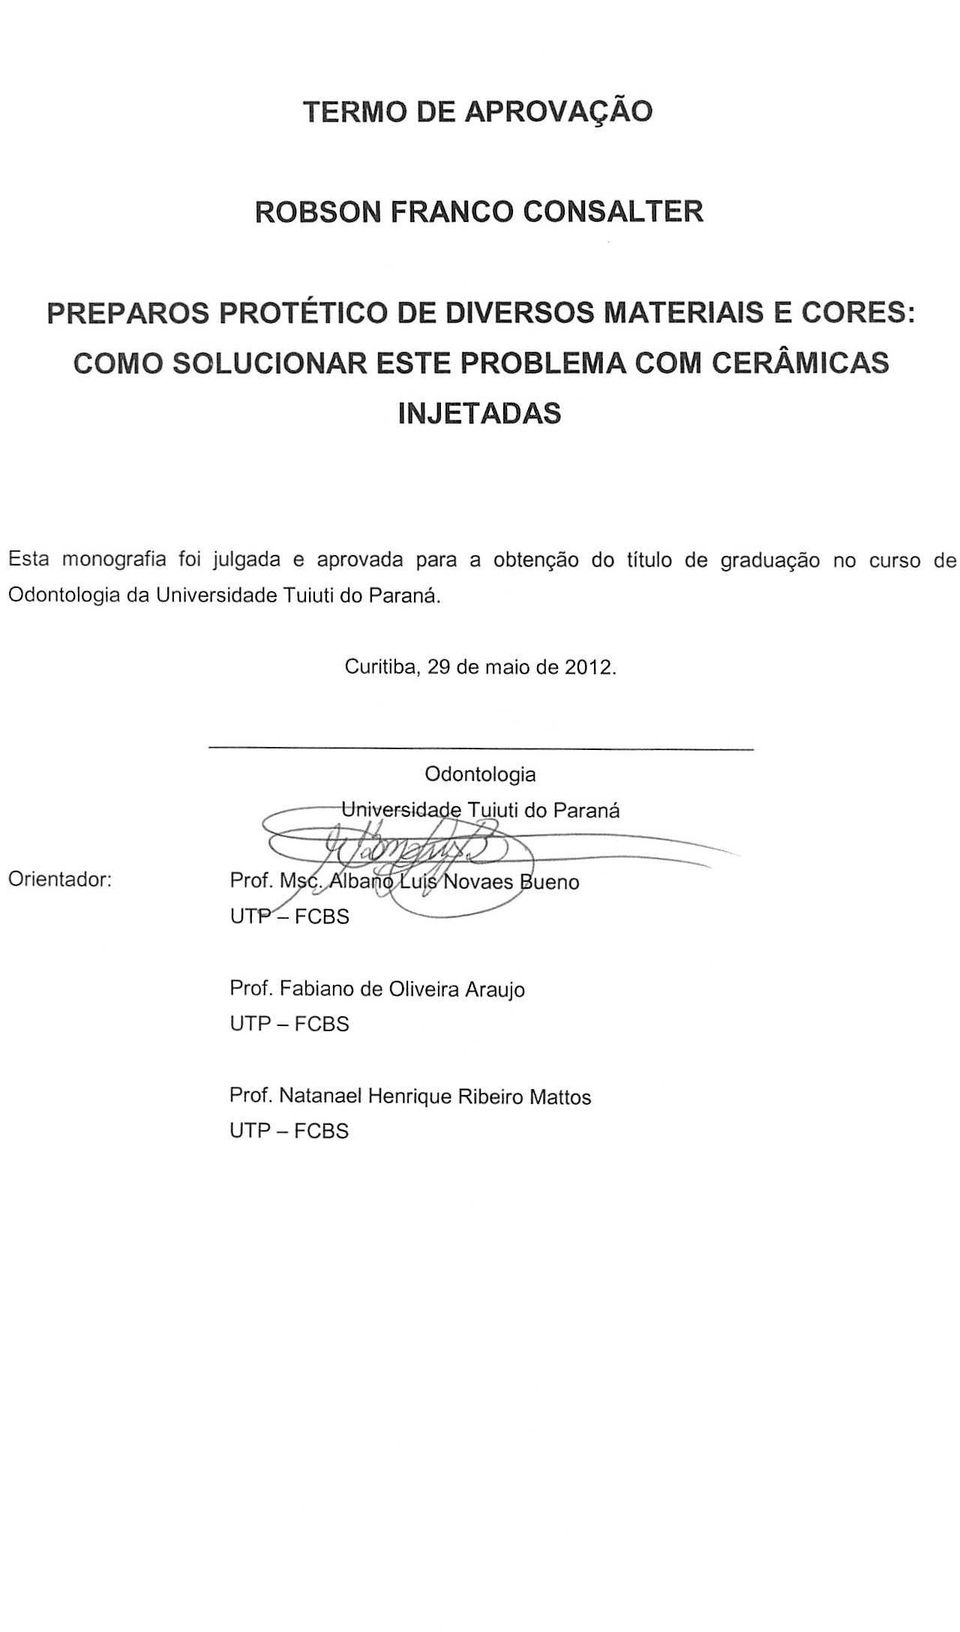 titulo de gradua9ao no curso de Odontologia da Universidade Tuiuti do Parana. Curitiba, 29 de maio de 2012.